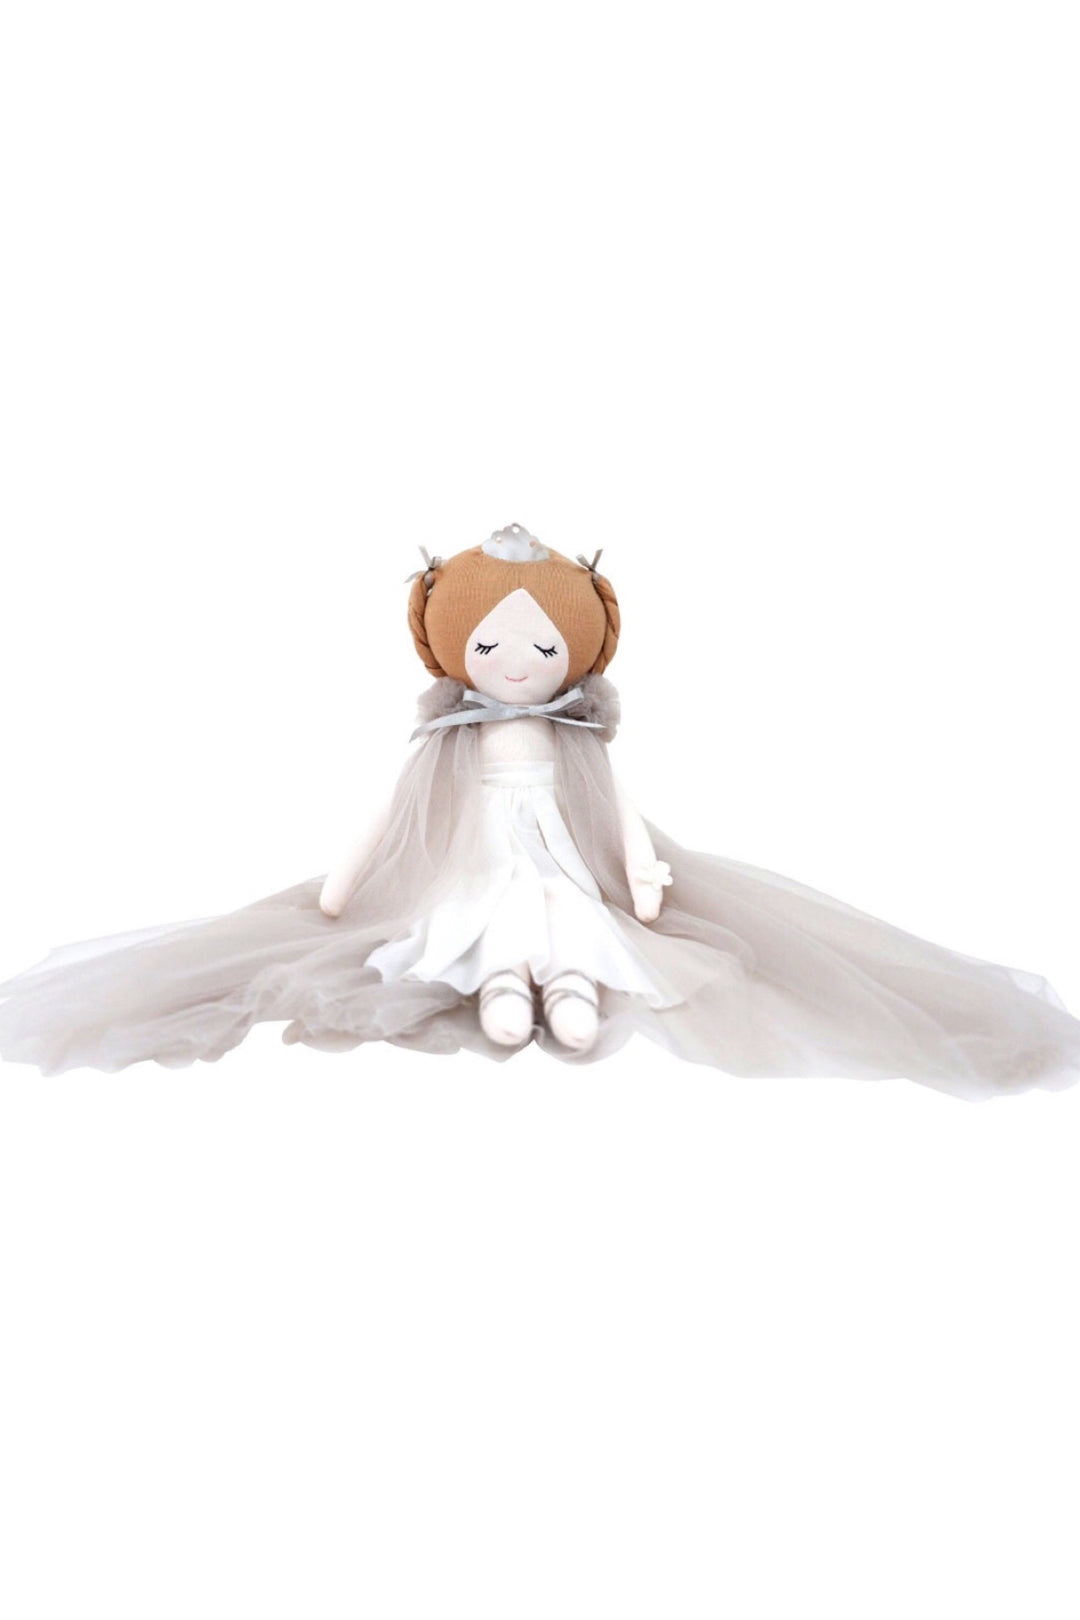 Dreamy Princess Olivia, Toy, Spinkie - 3LittlePicks